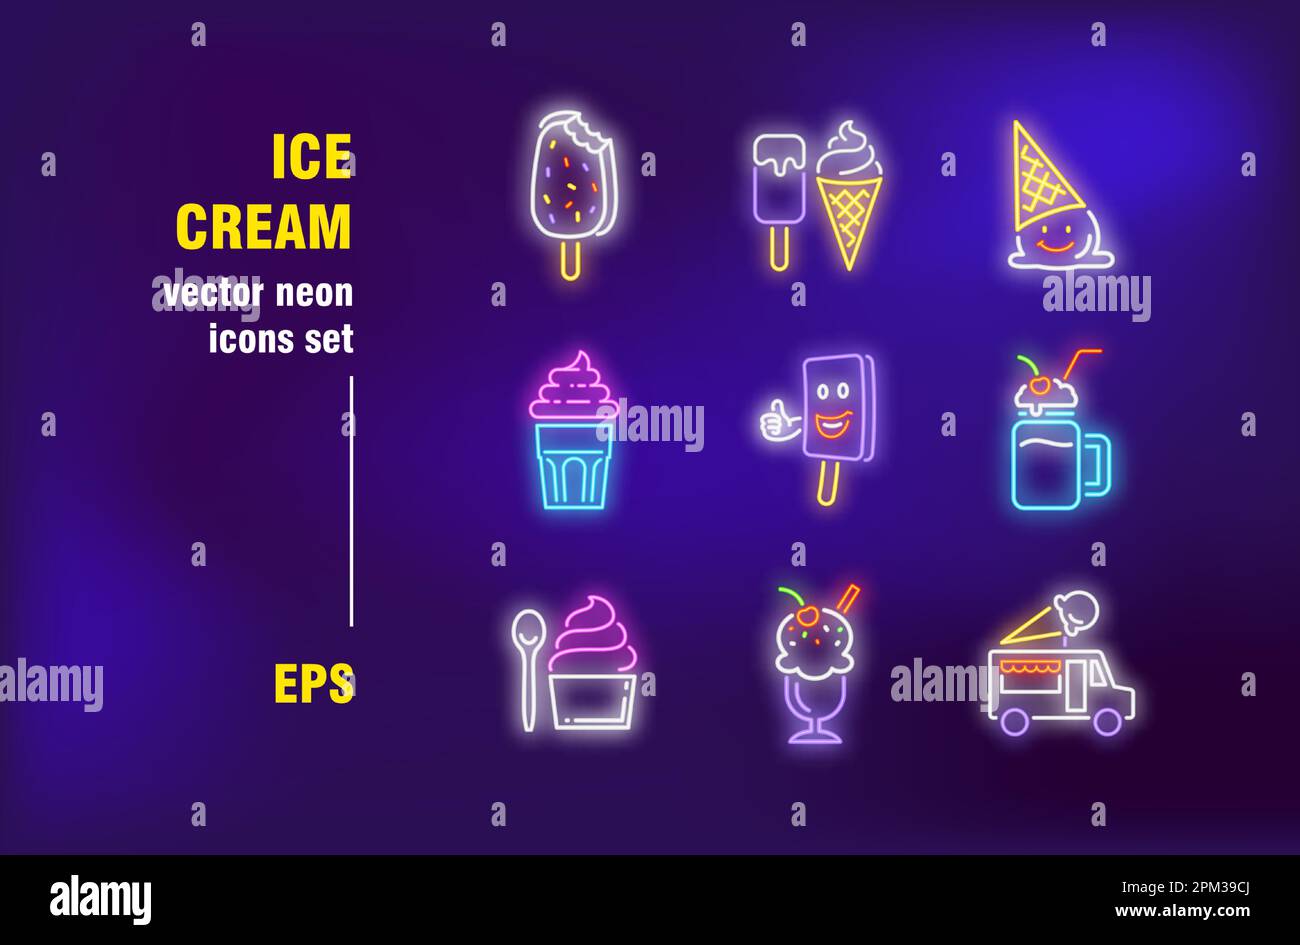 Ice cream set in neon style Stock Vector